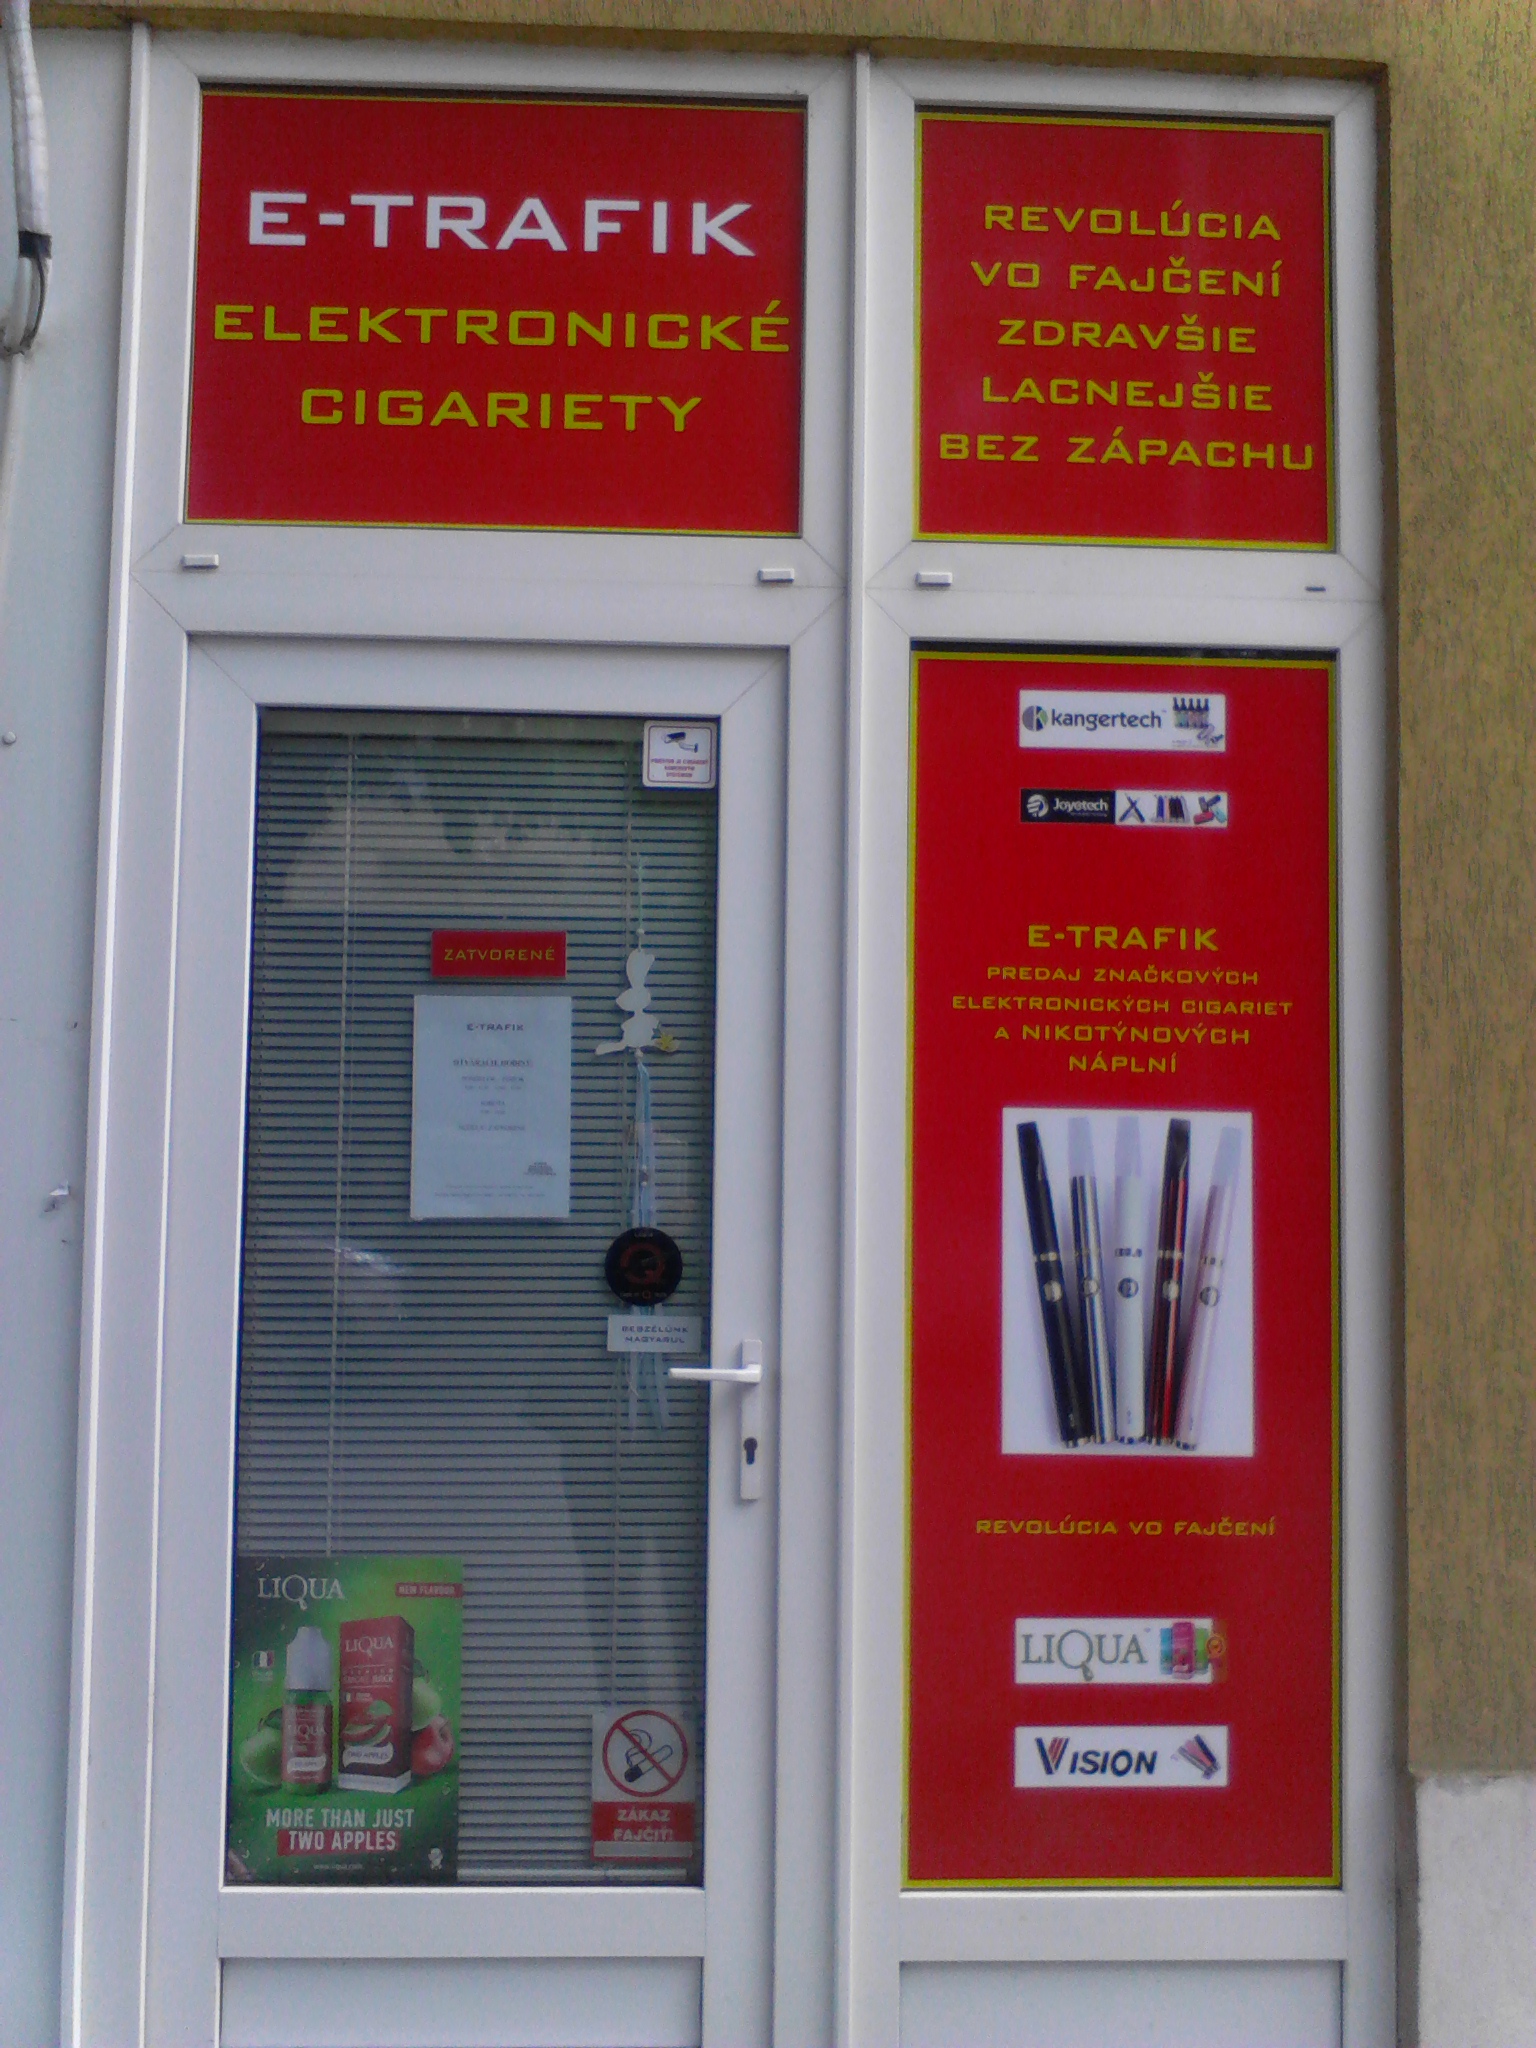 Predaj elektronických cigariet, príslušenstva, nikotinové a beznikotinové liquidy a bázy - E-TRAFIK